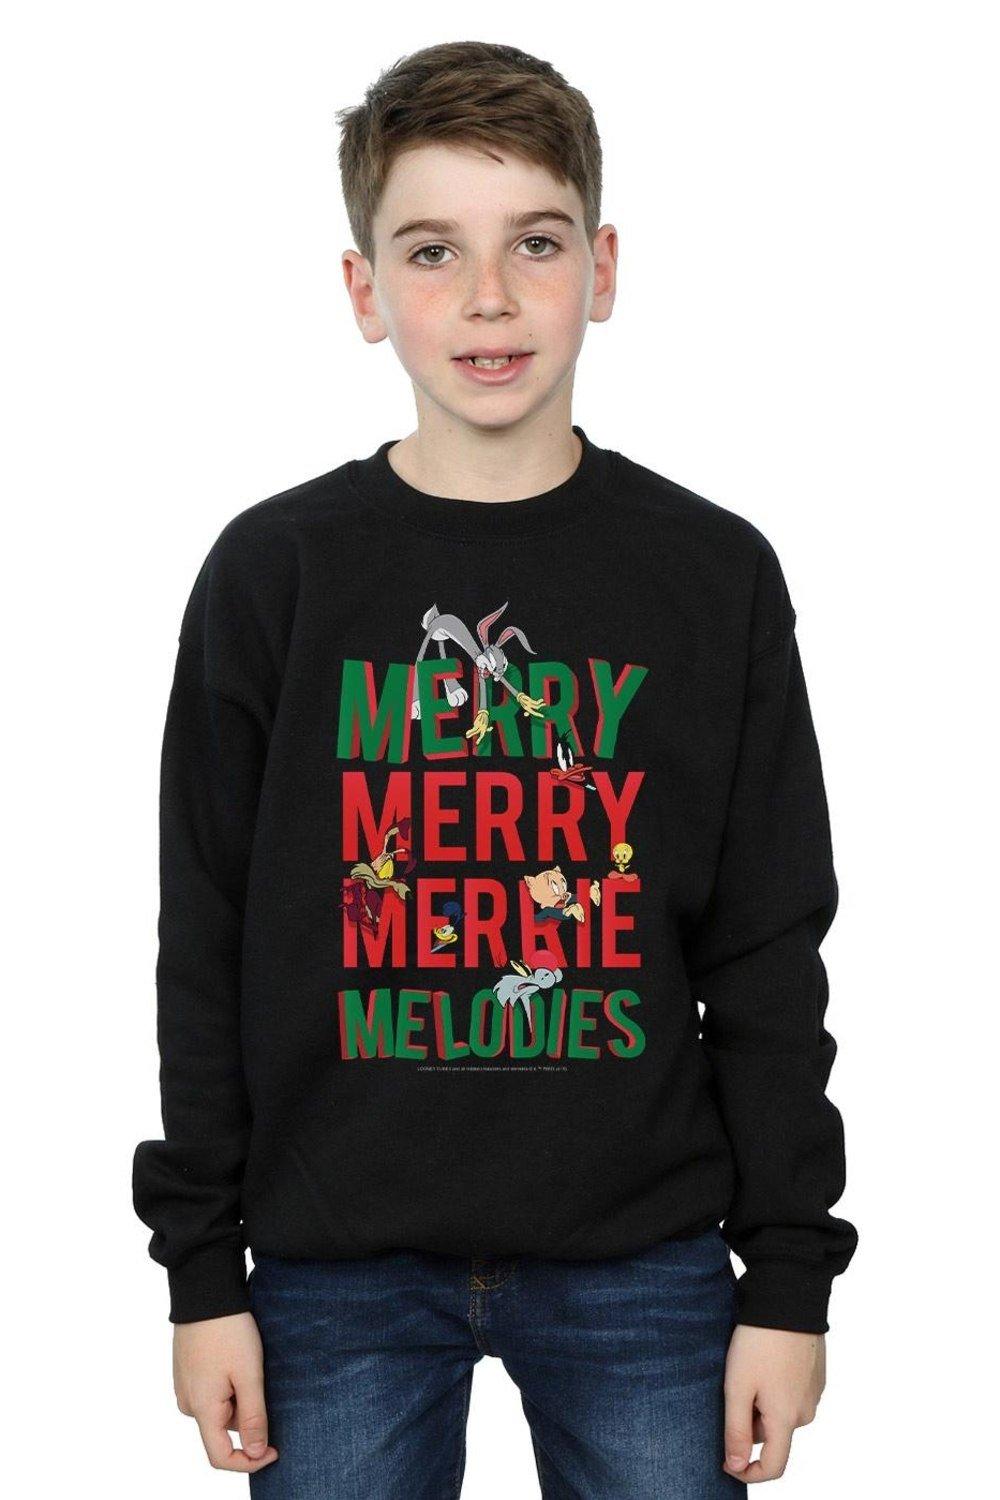 Merry Merrie Melodies Sweatshirt